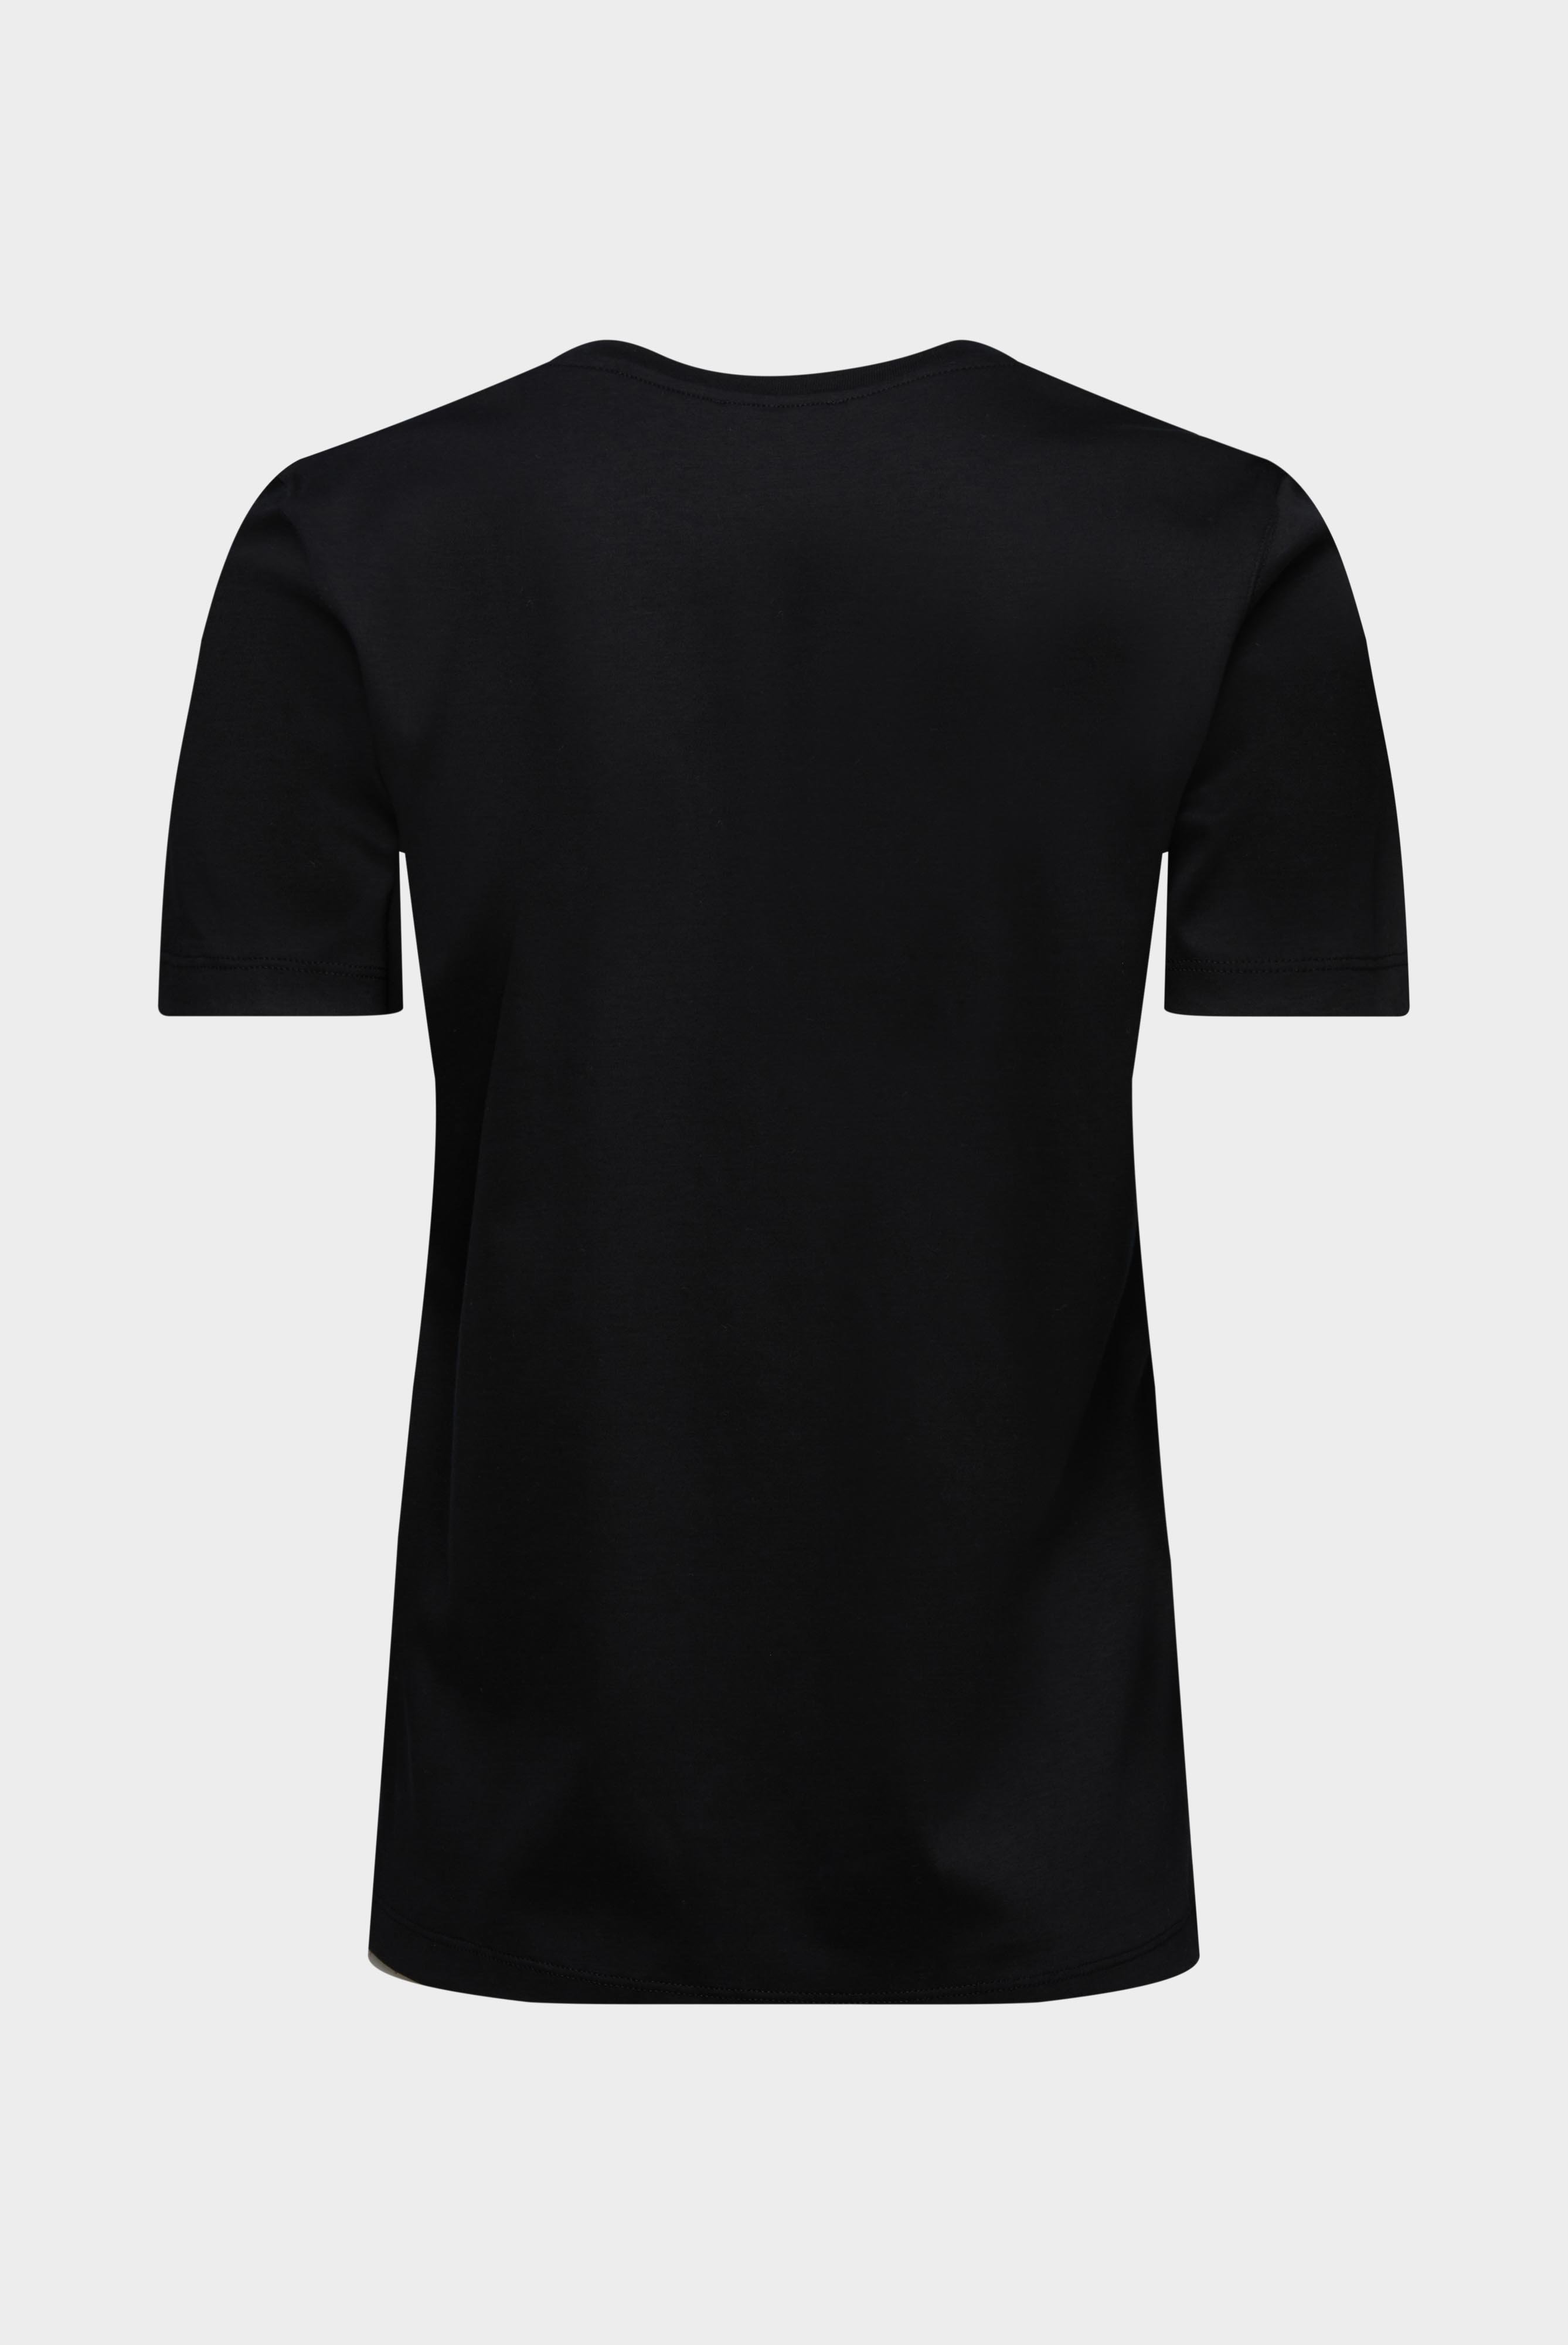 Tops & T-Shirts+Jersey T-Shirt+05.6384.18.180031.099.38